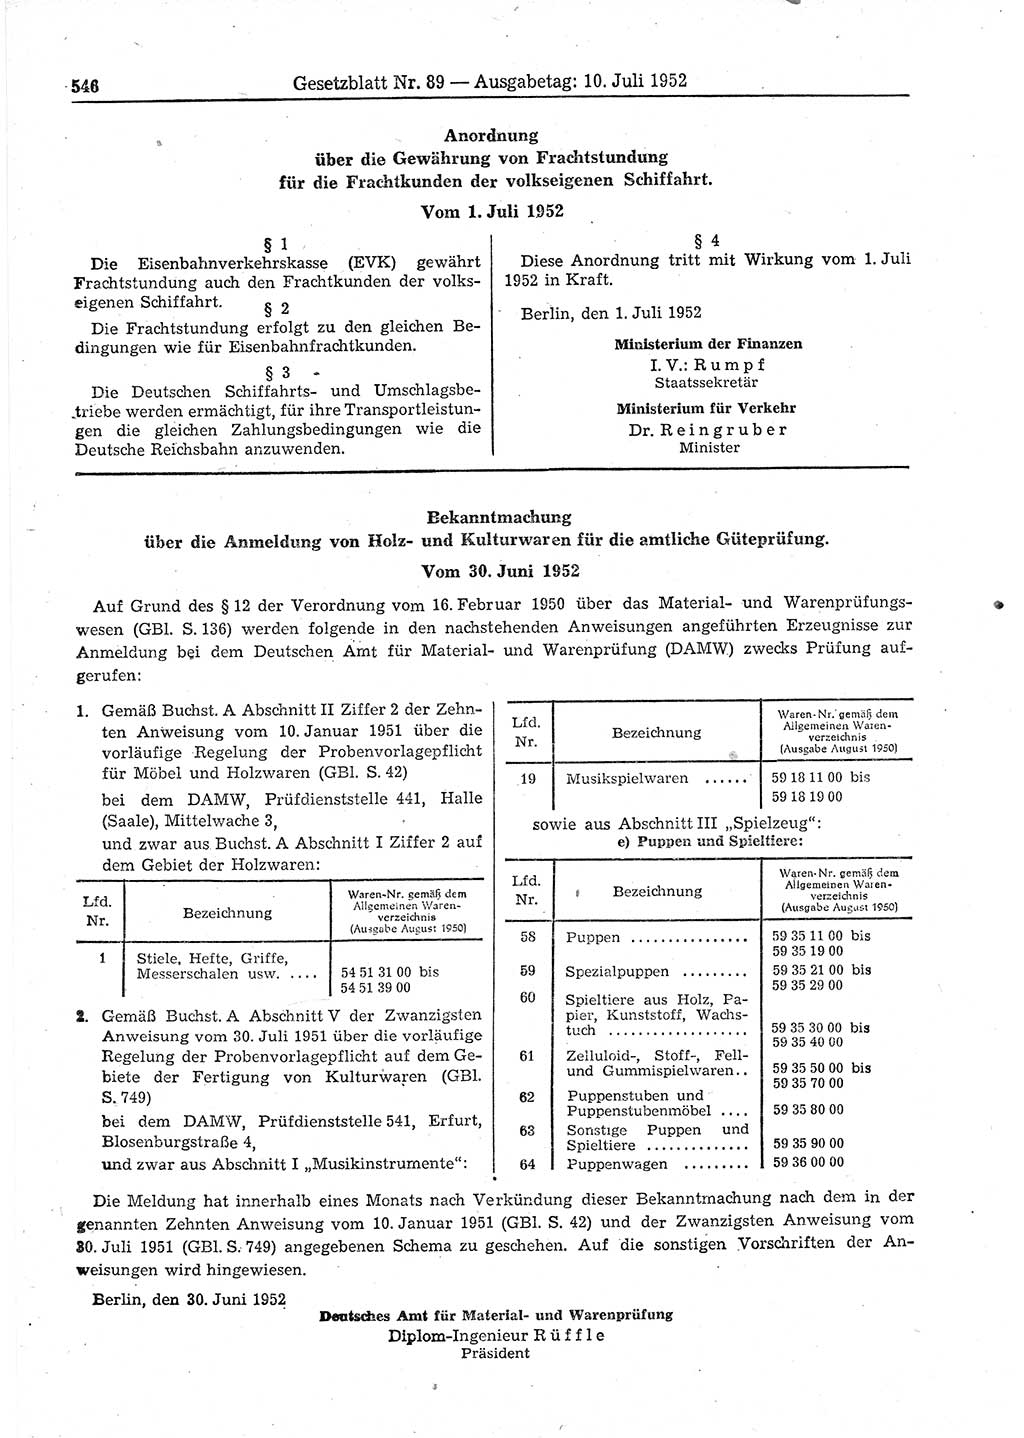 Gesetzblatt (GBl.) der Deutschen Demokratischen Republik (DDR) 1952, Seite 546 (GBl. DDR 1952, S. 546)